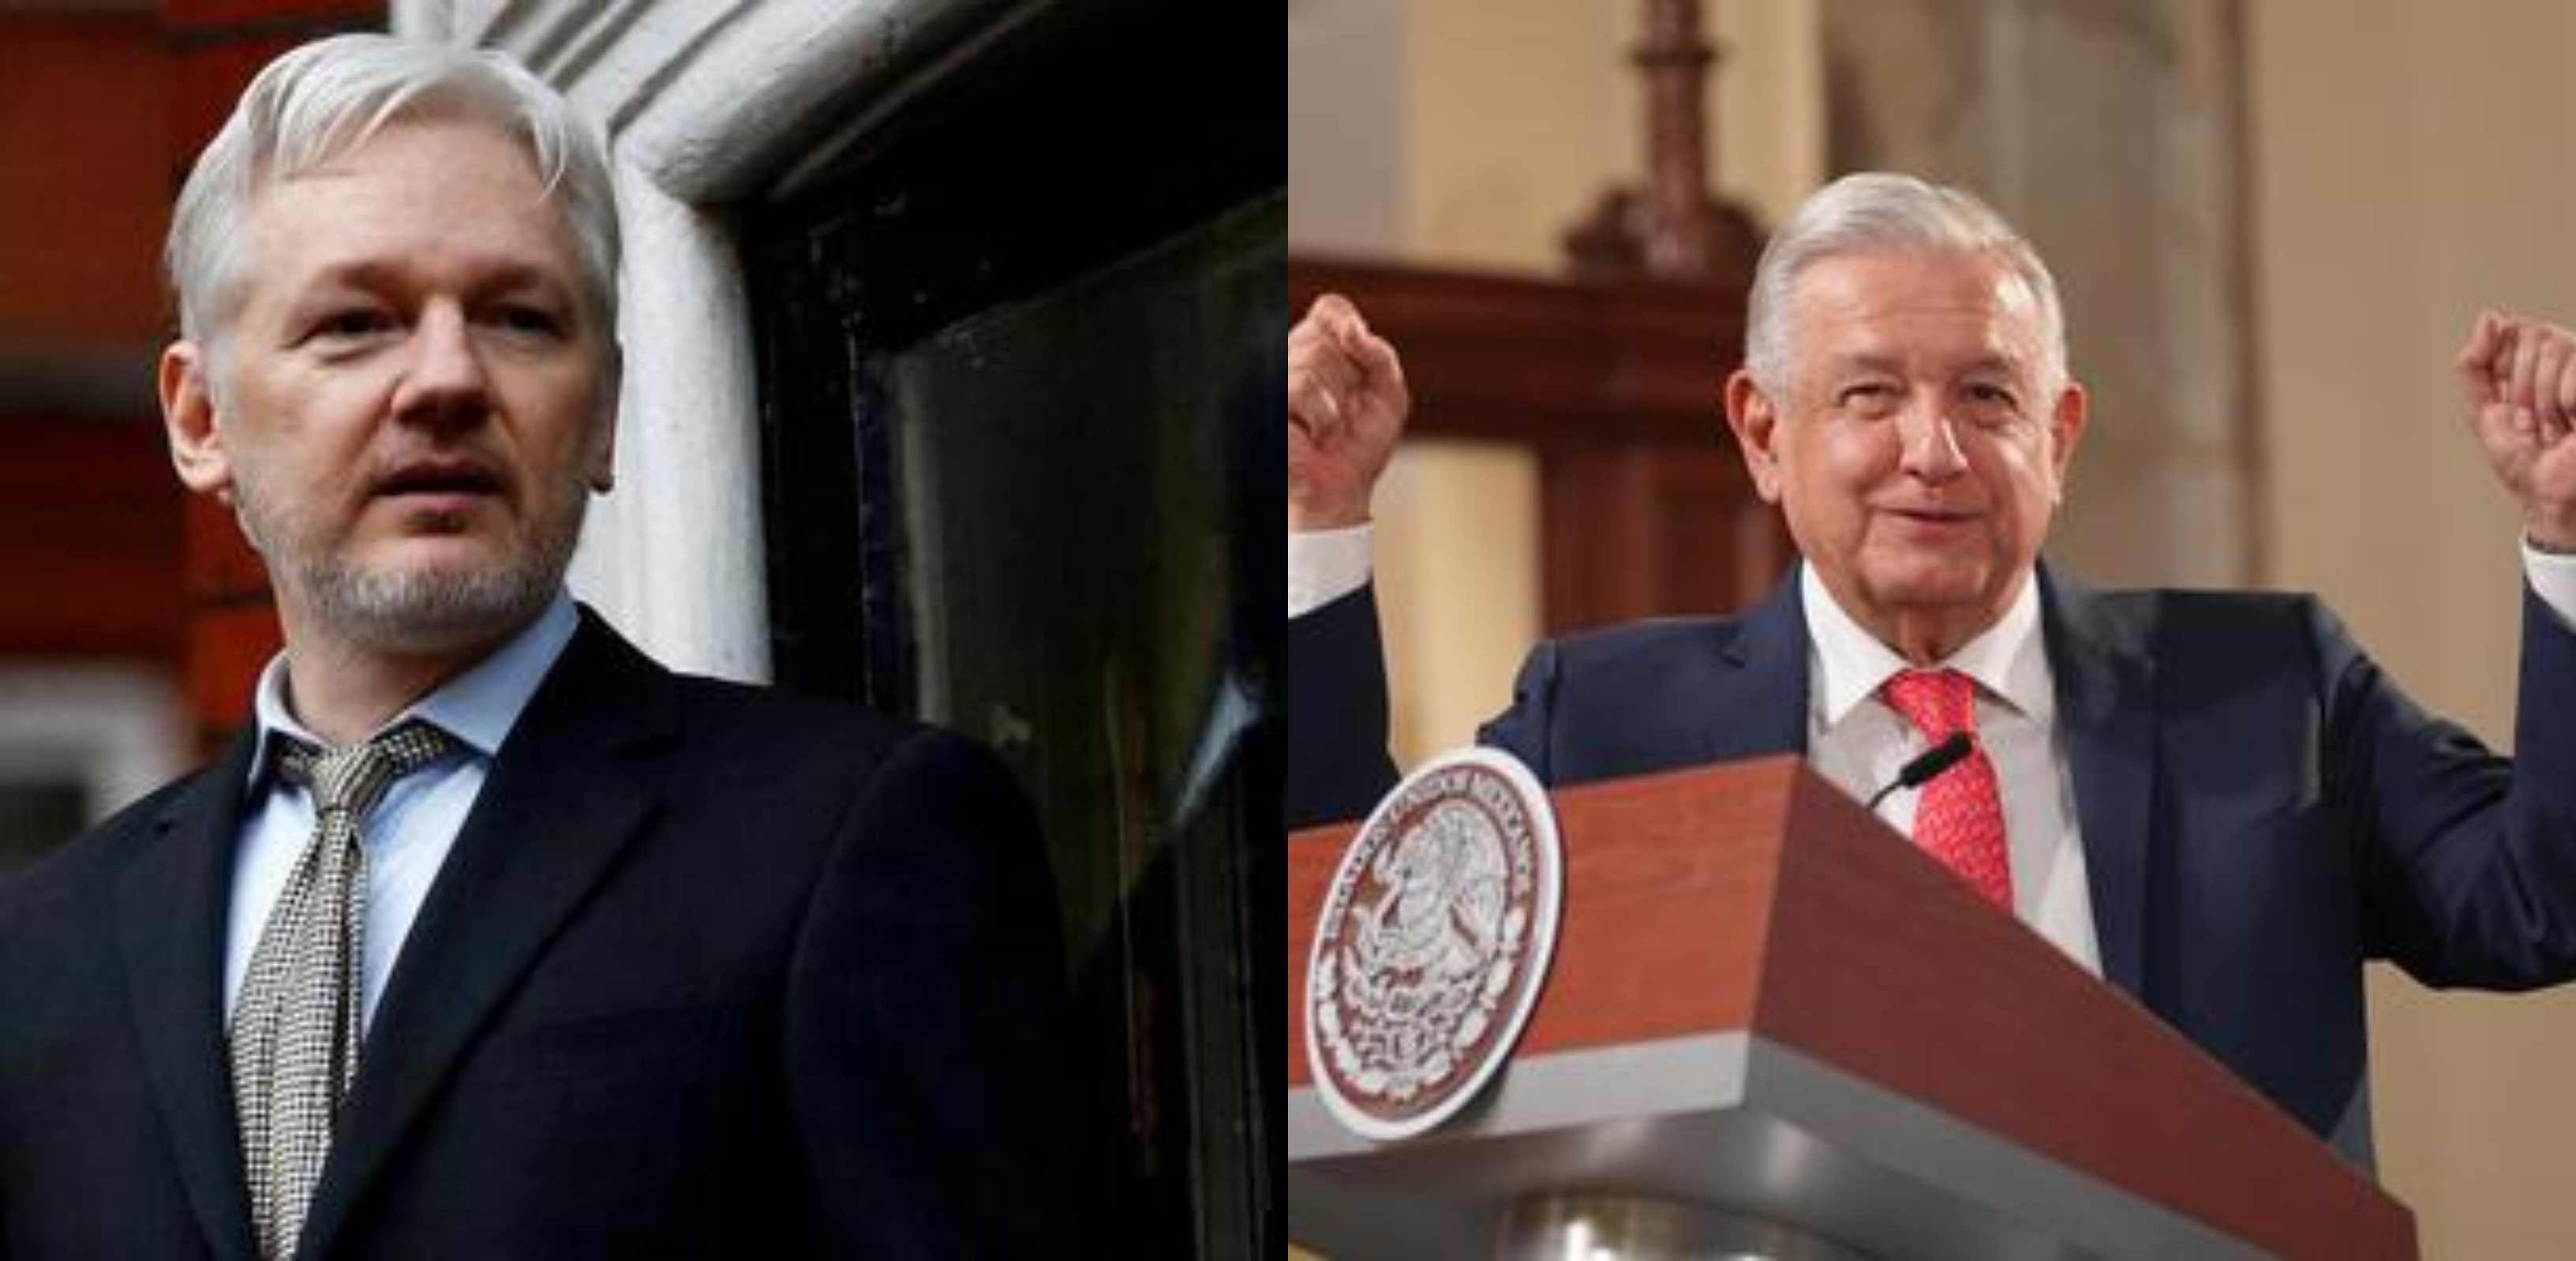 El presidente de México volvió a ofrecer asilo político al periodista australiano buscado por el gobierno de Estados Unidos (Fotos: Reuters / lopezobrador.org)